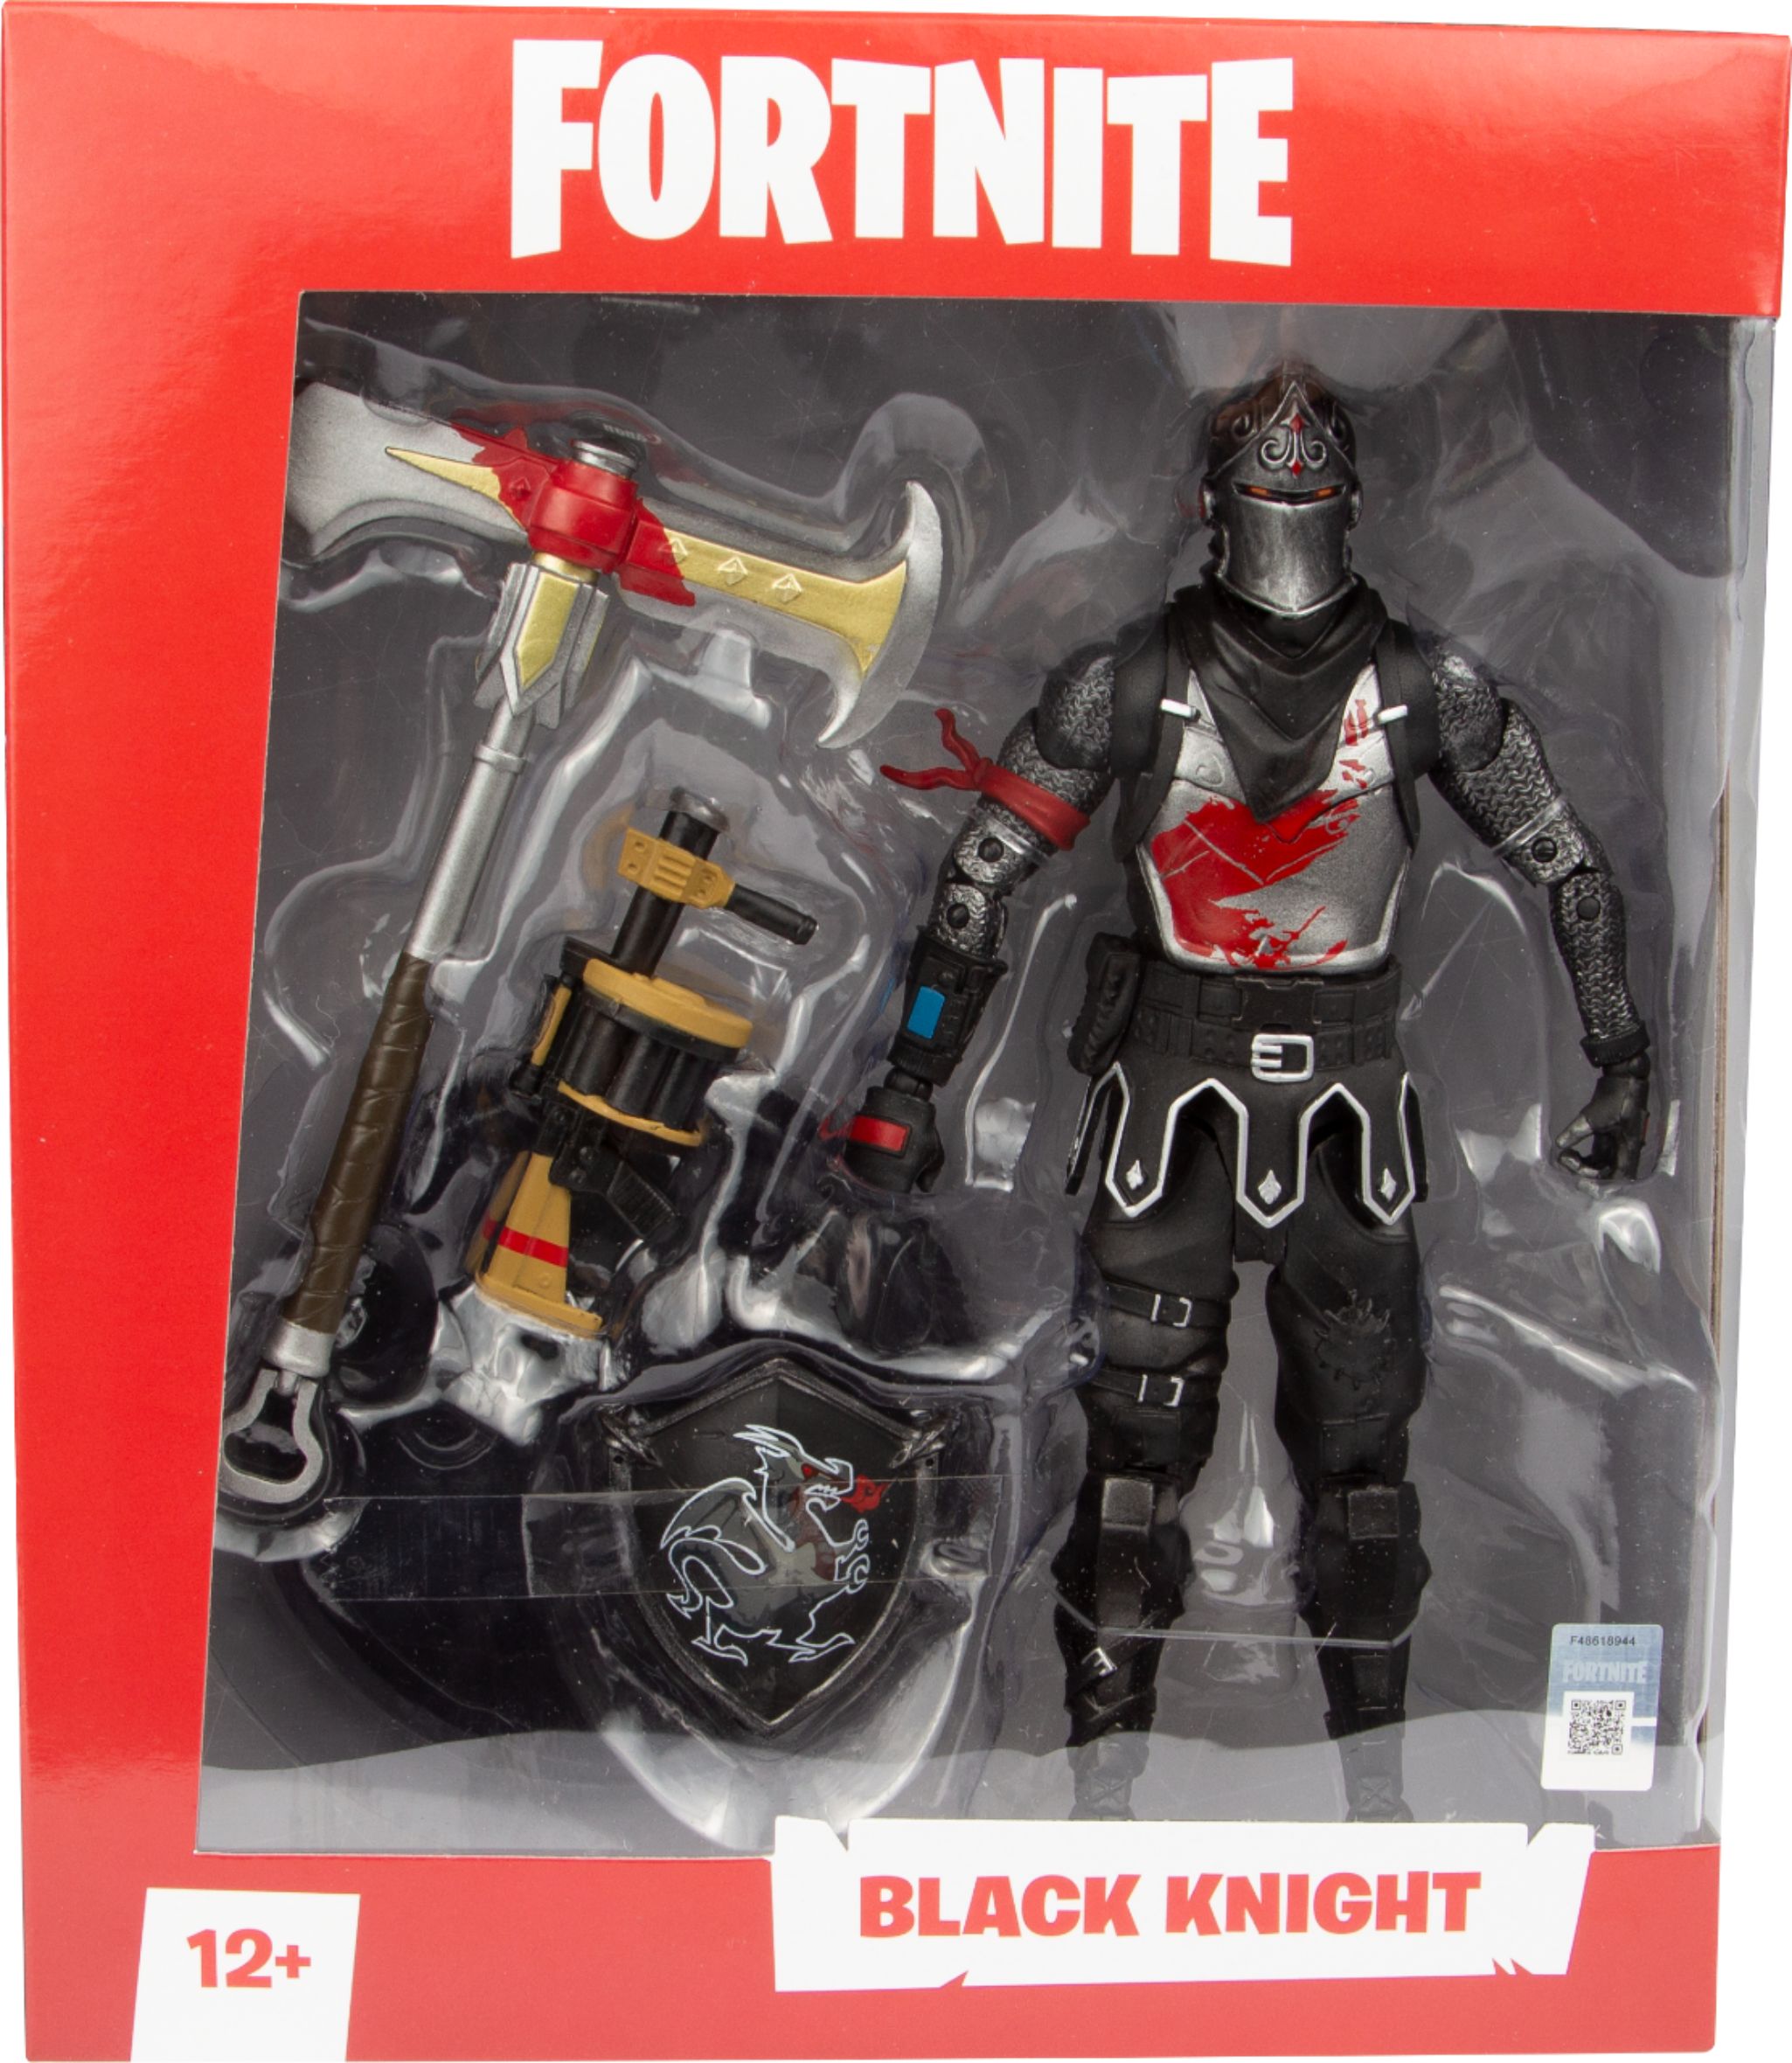 black knight fortnite toy